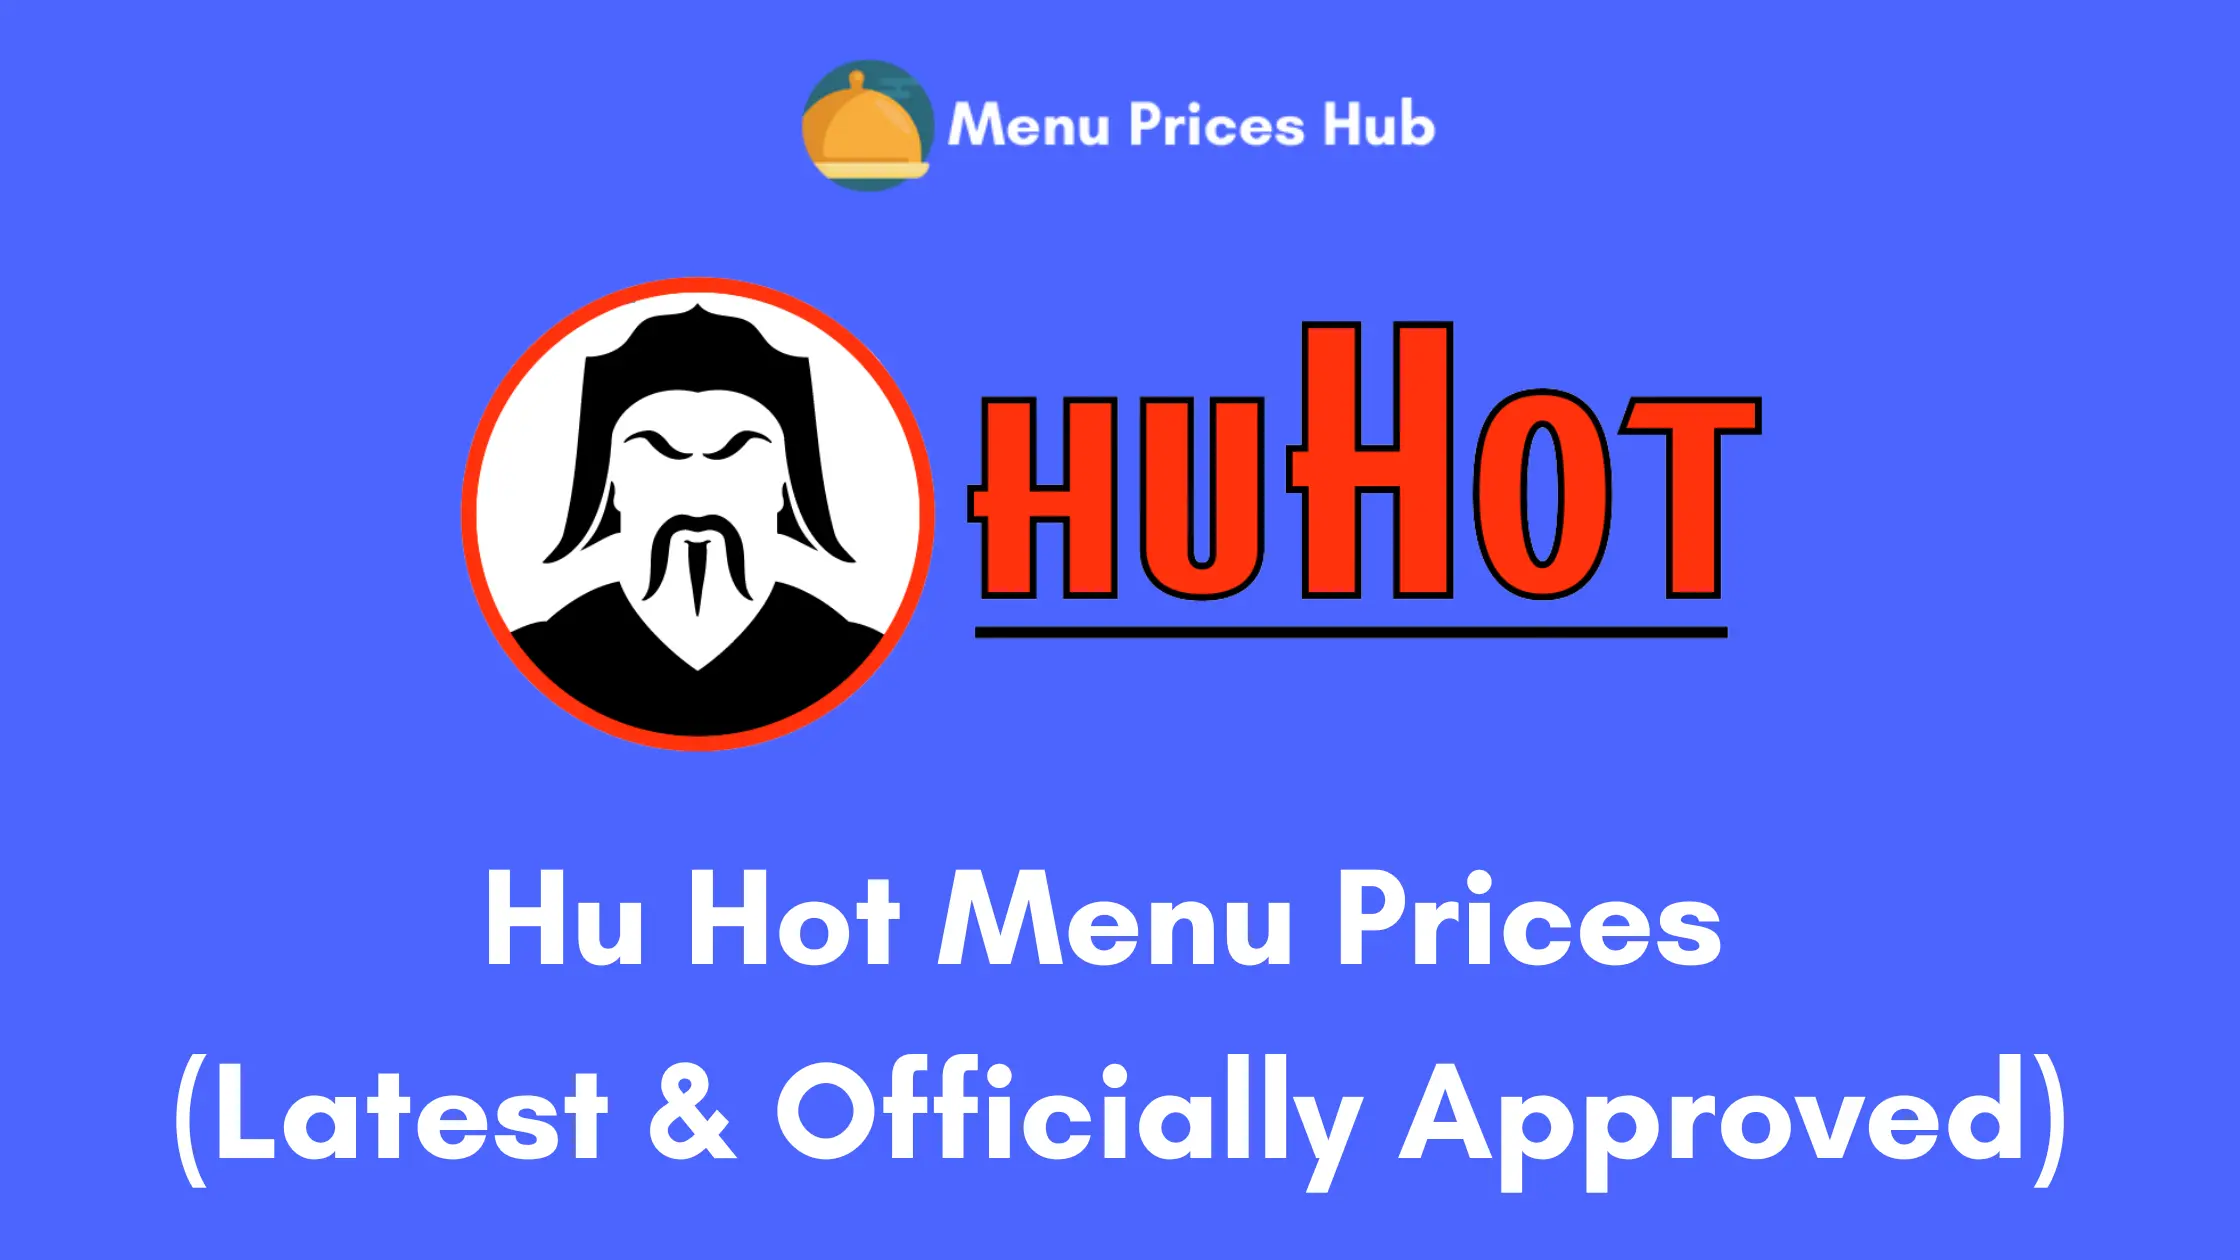 hu hot menu prices